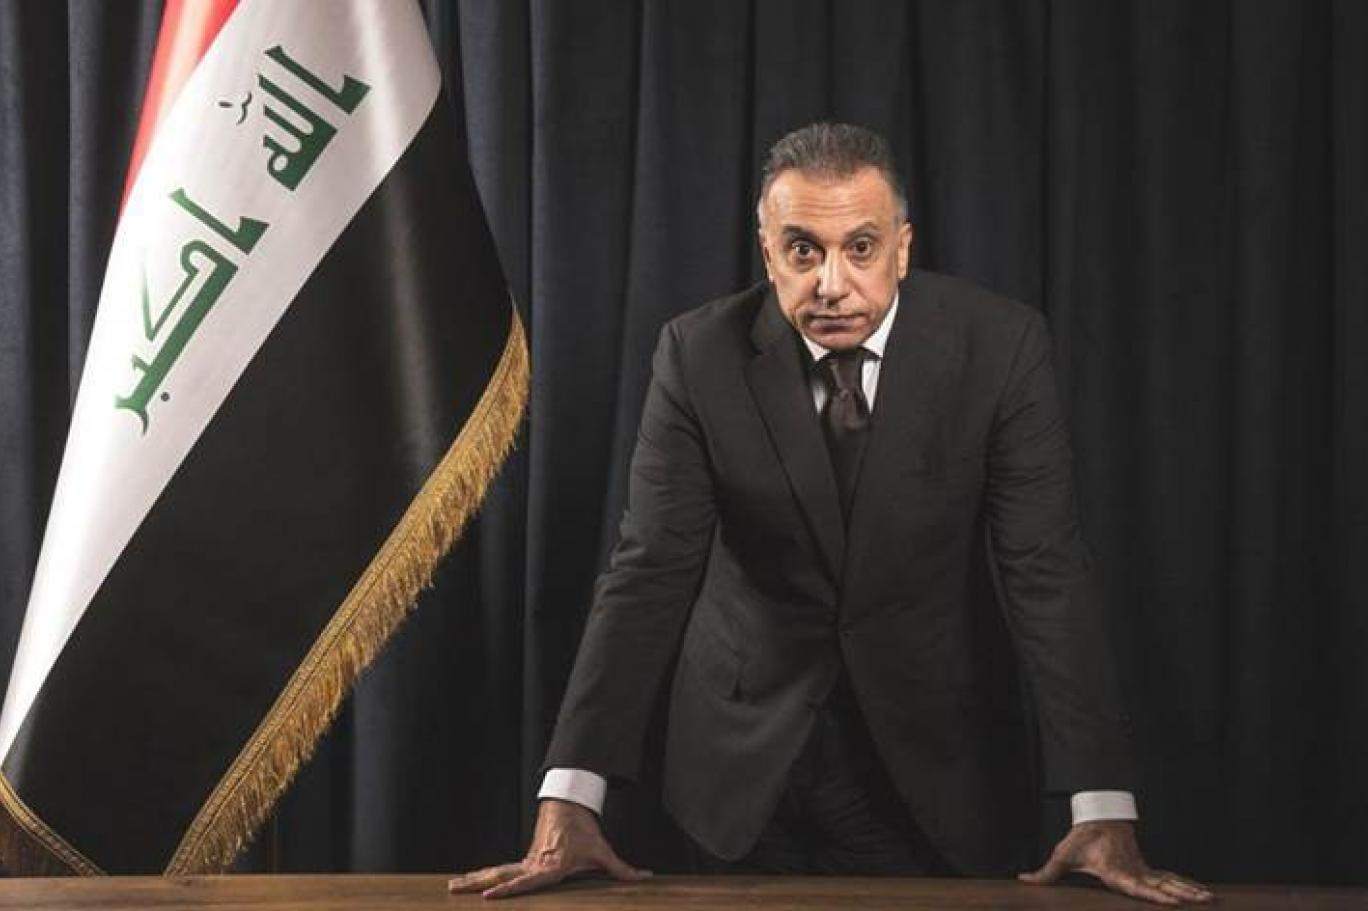 تلاش برای ترور نخست وزیر عراق؛ «نمایش» یا «فتنه جدید»؟